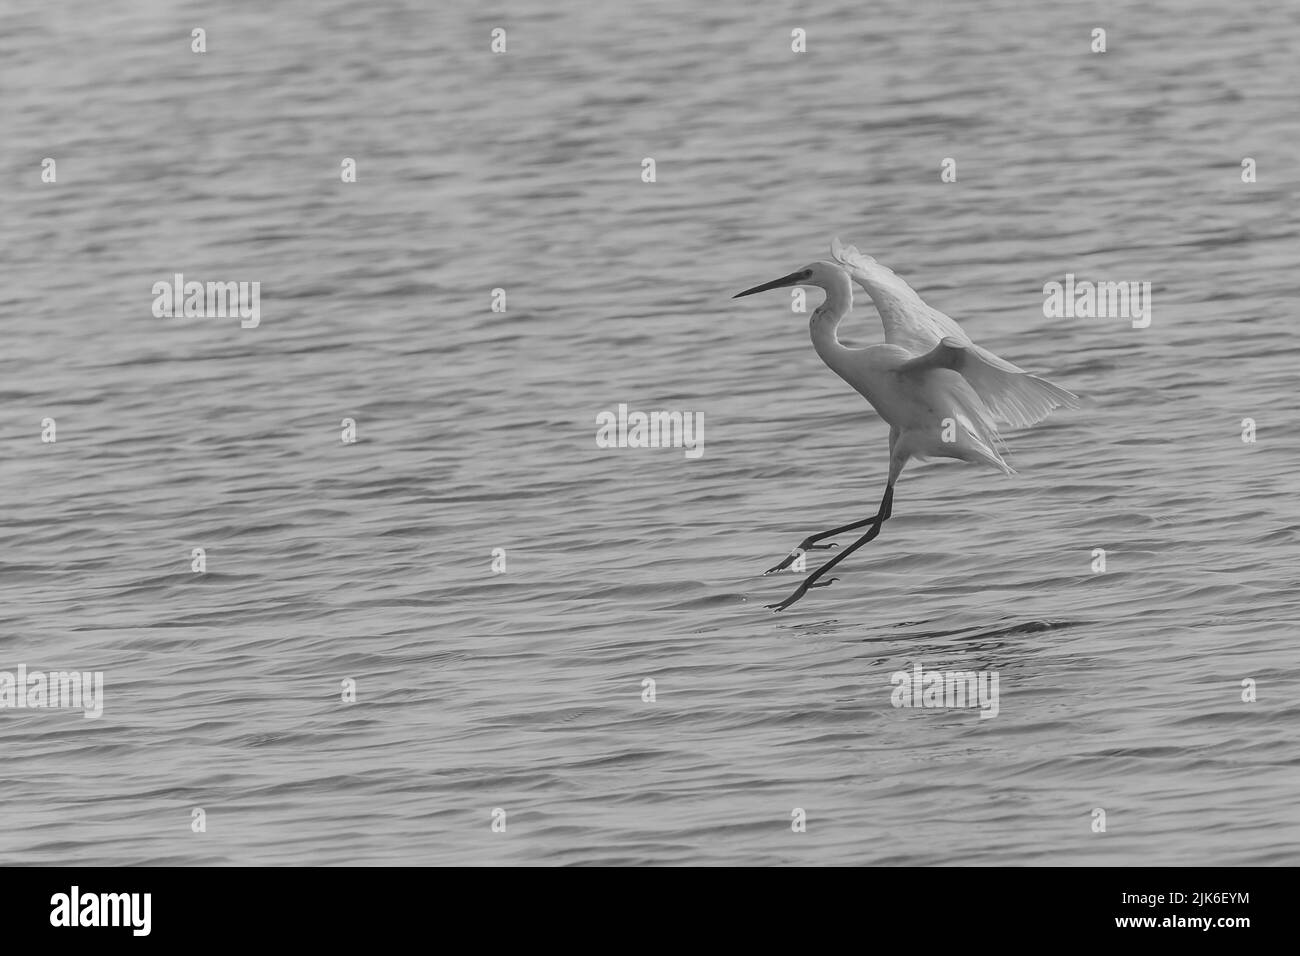 foto en blanco y negro de garceta volando hacia el estanque Foto de stock